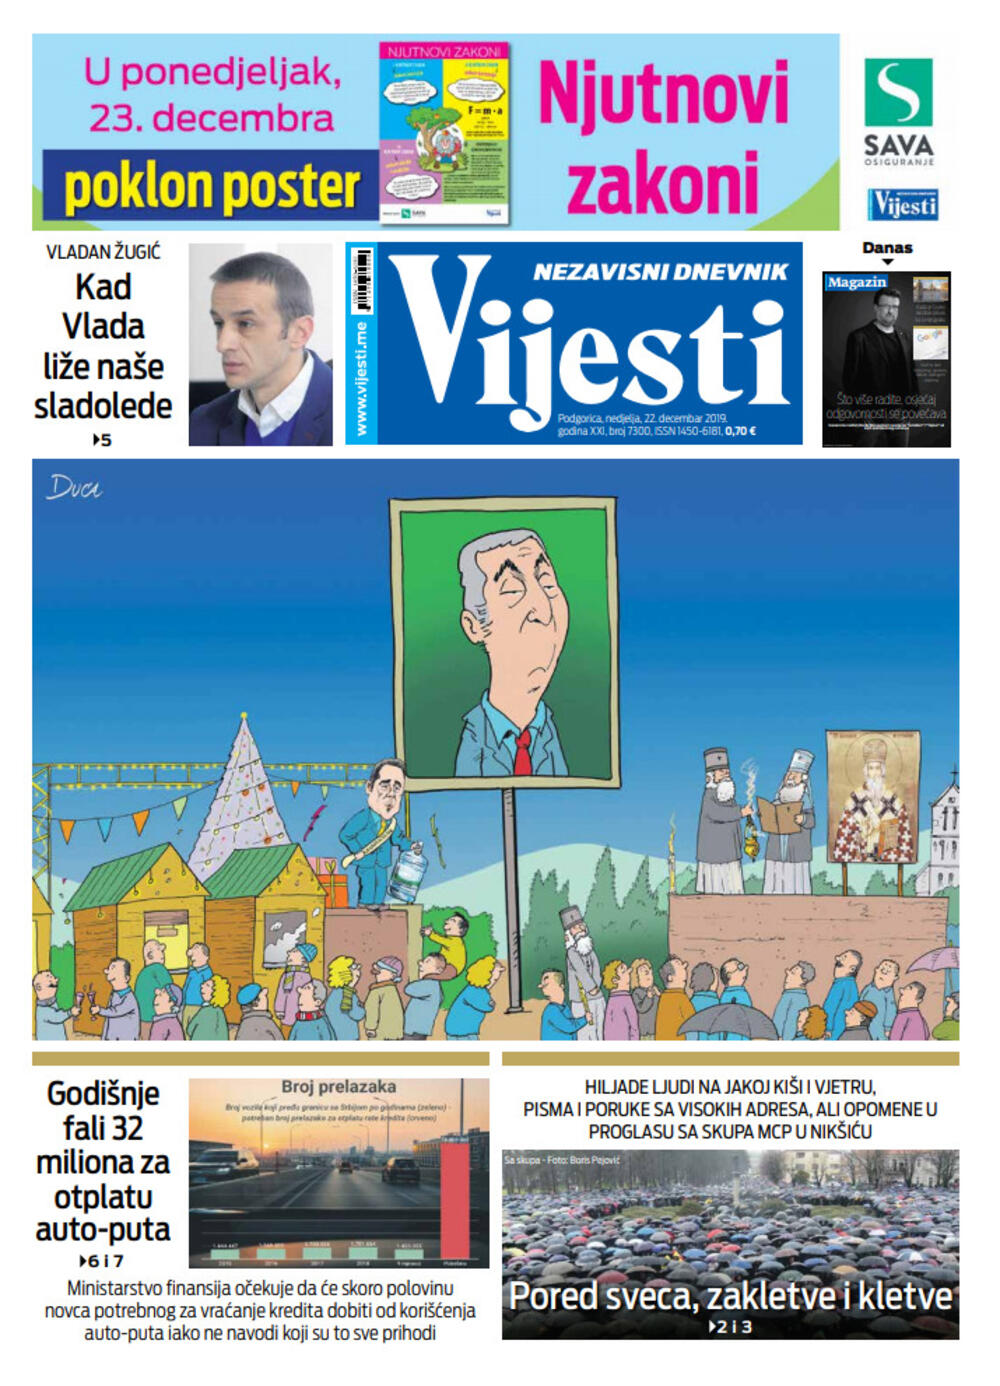 Naslovna strana "Vijesti" za 22. decembar 2019., Foto: Vijesti